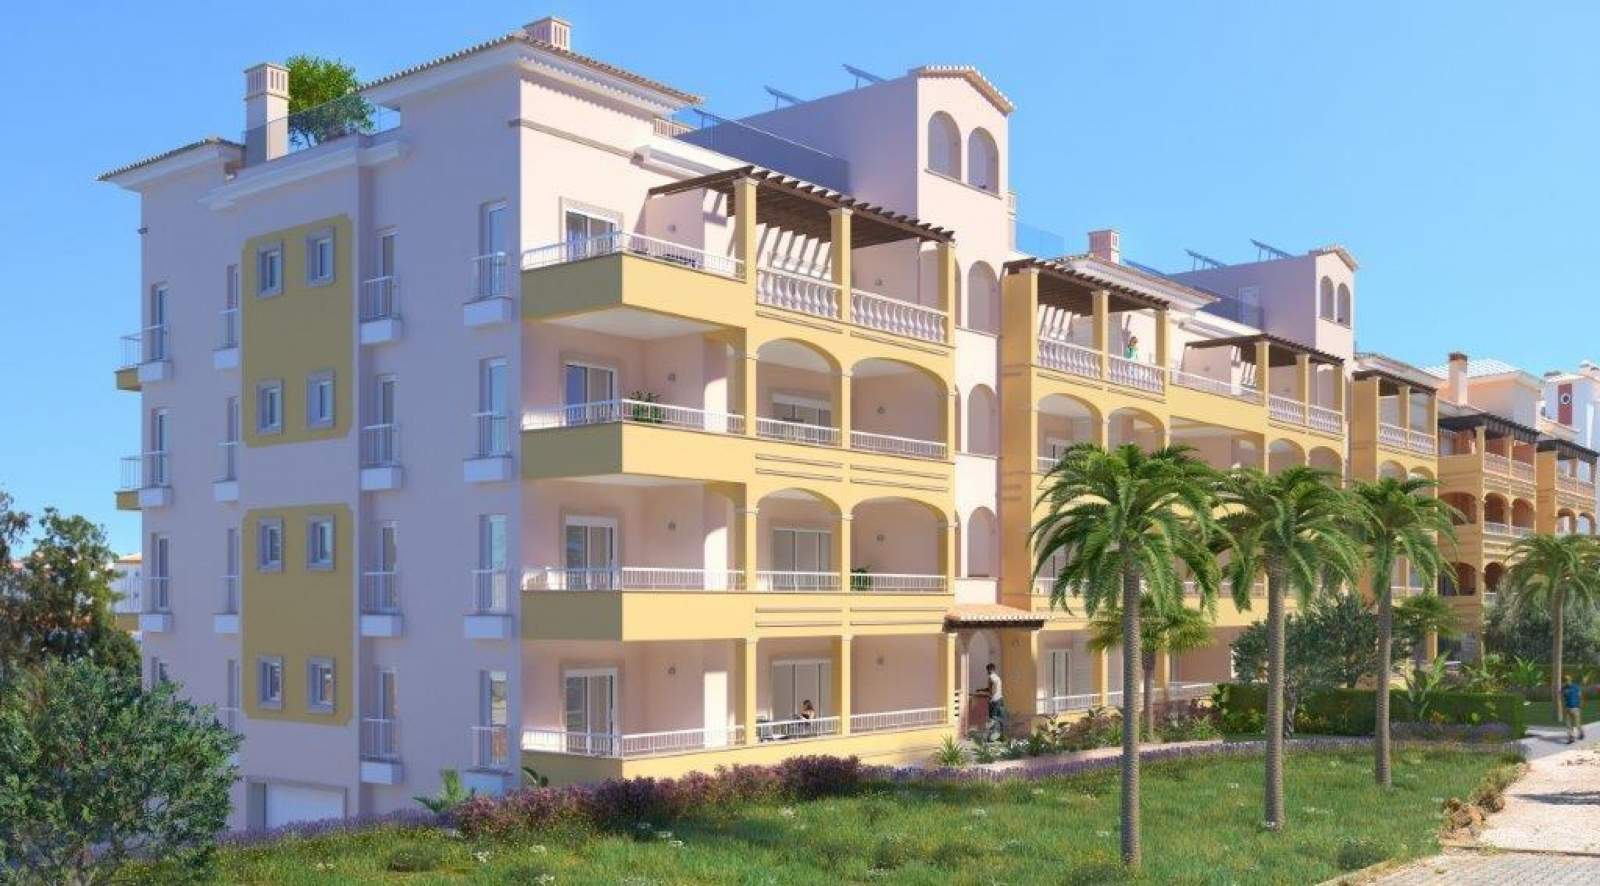 Verkauf einer Wohnung im Bau, mit Terrasse, in Lagos, Portugal_141552